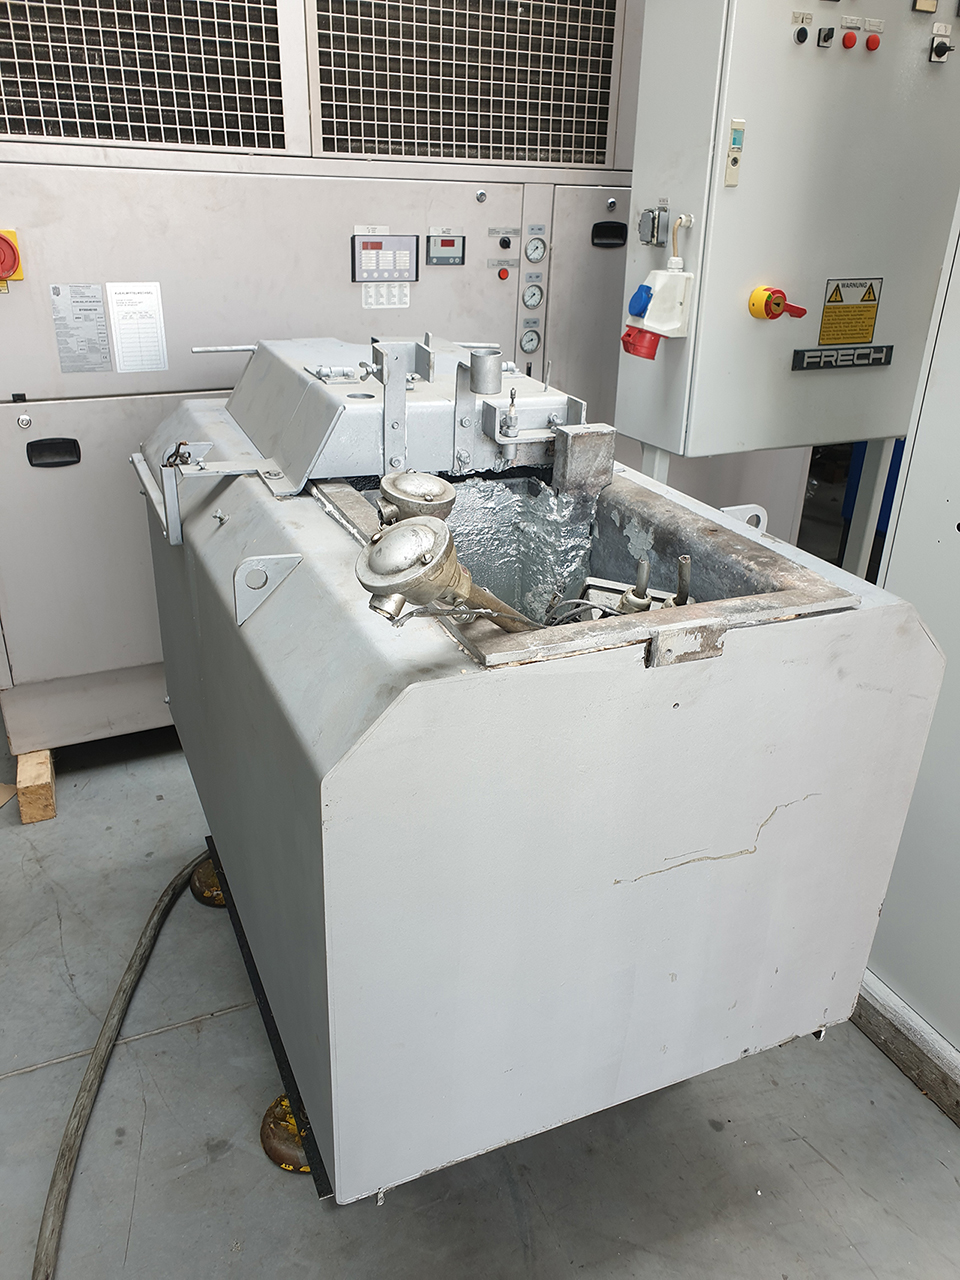 Überholung von Frech DAW 80 Warmkammer Druckgießmaschine